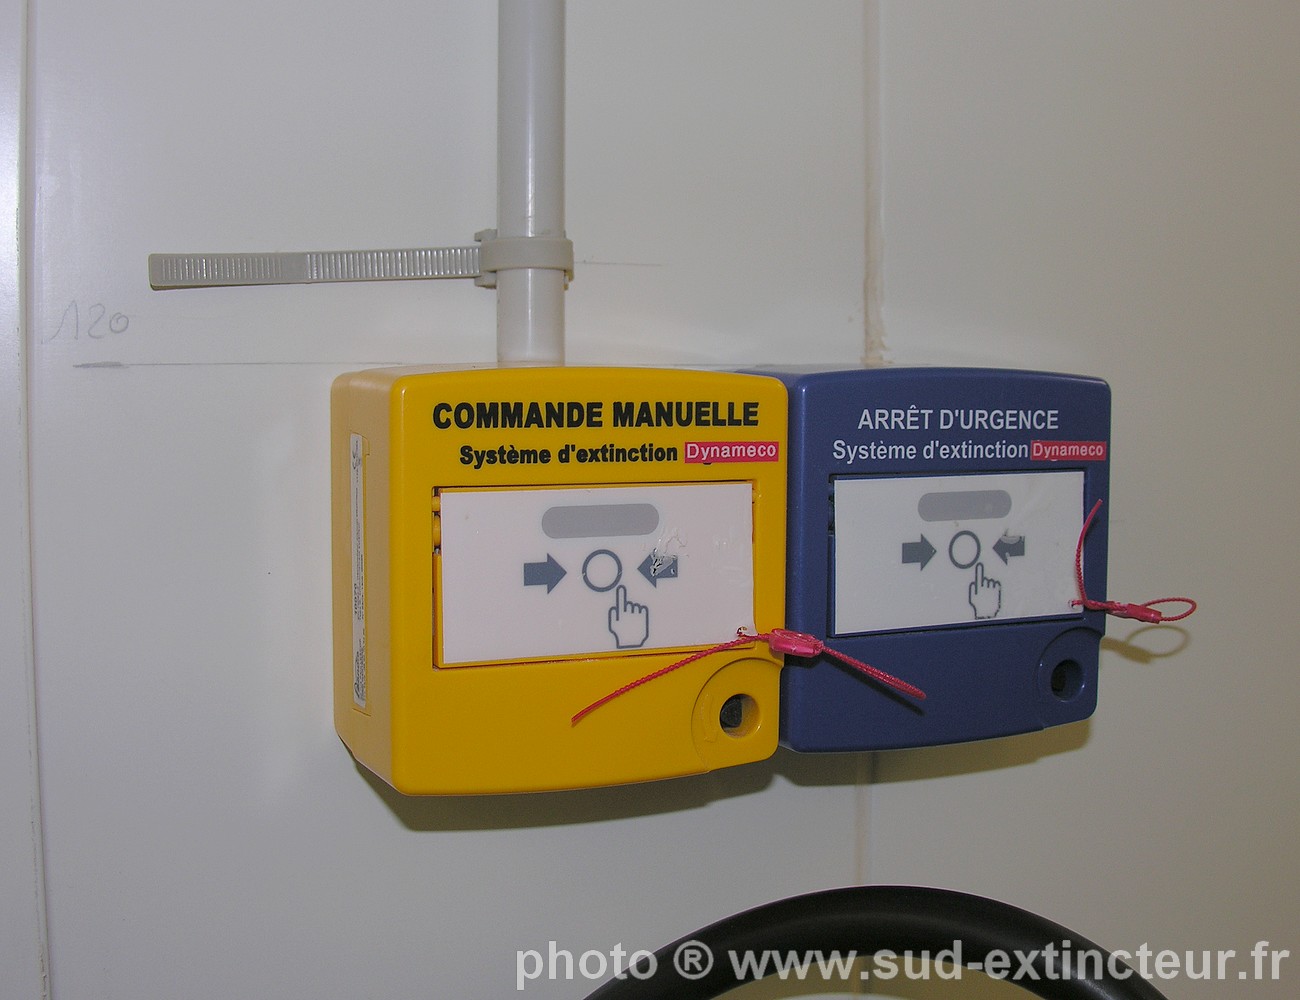 Déclencheur Activation Manuelle et bouton d'Arrêt d'Urgence associés à la centrale